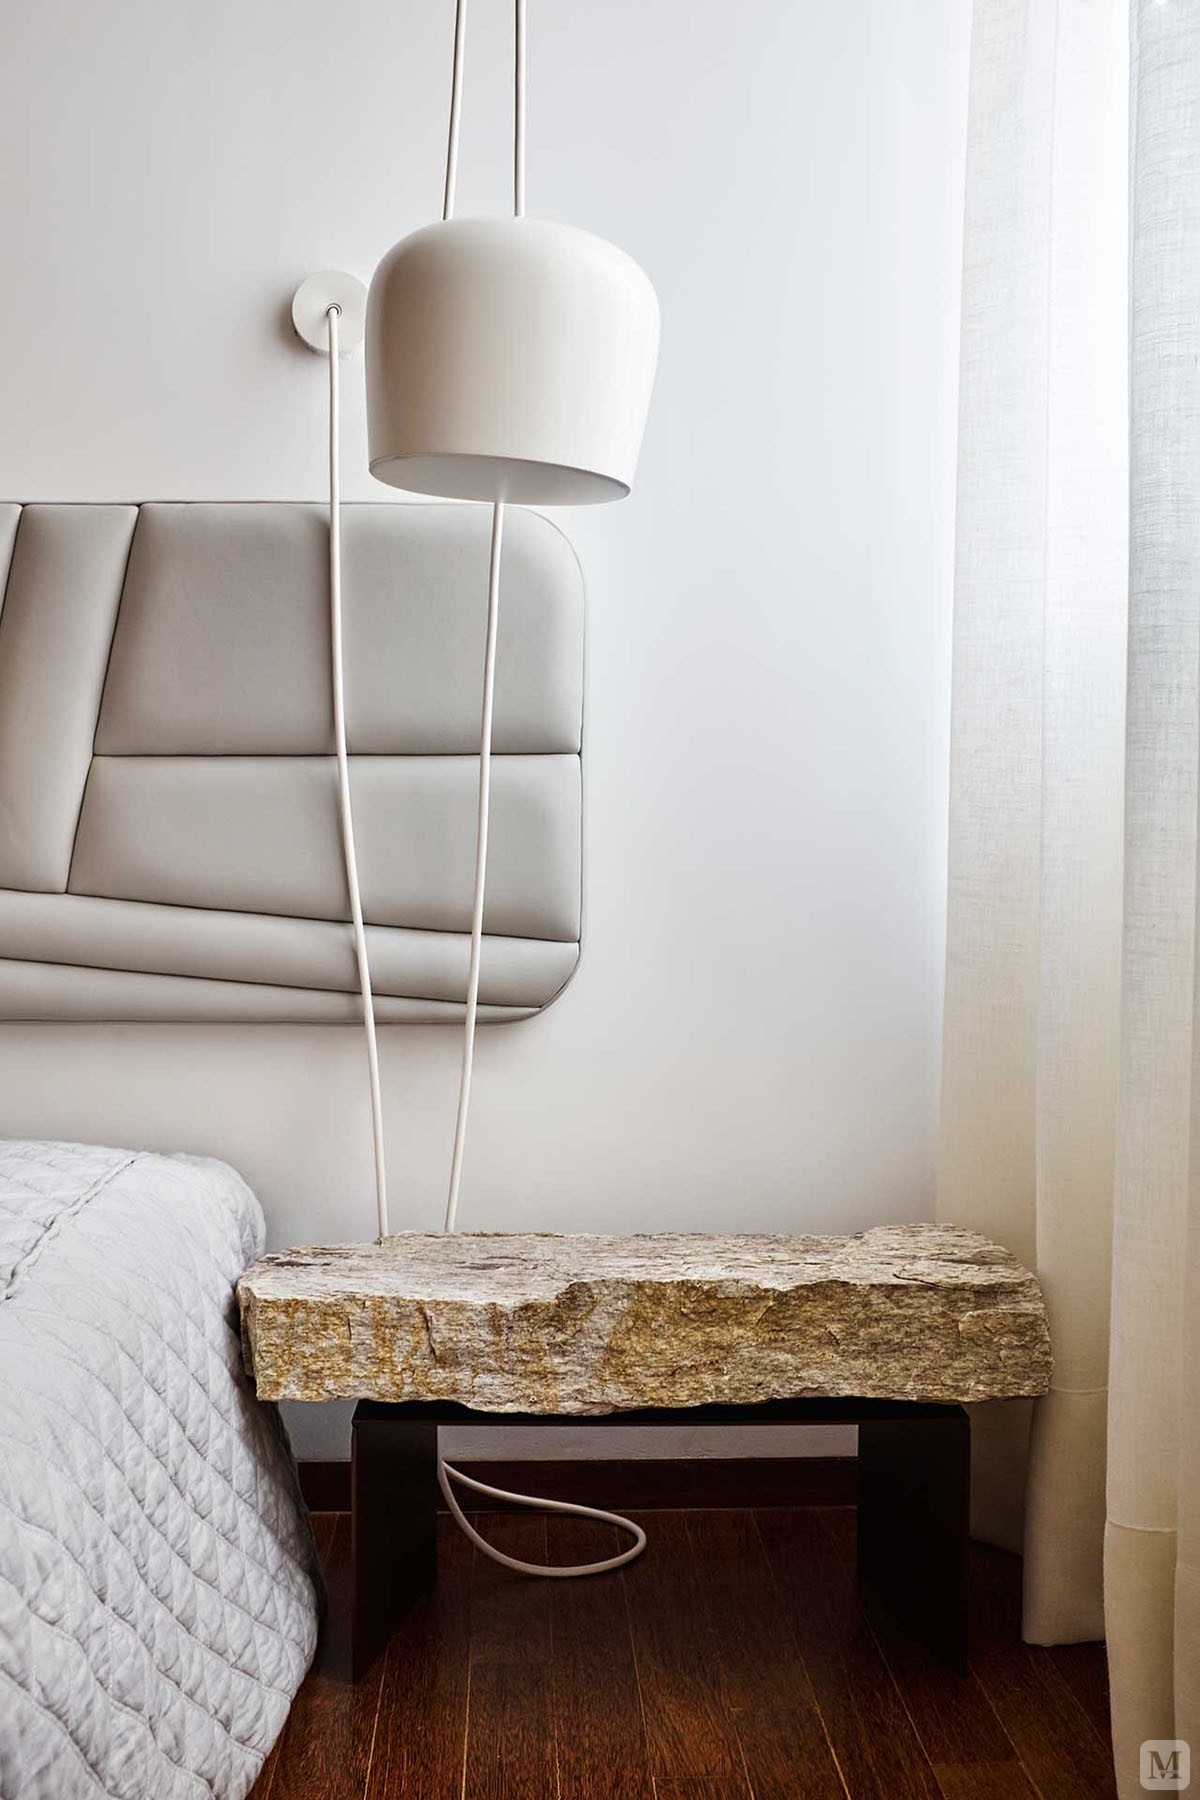 卧室的颜色主要以素白为主，简约但每个细节又富有设计感，简单中透着令人喜悦的舒适。

假石设计的床头柜是最独特的，很有原始森林的旷野。